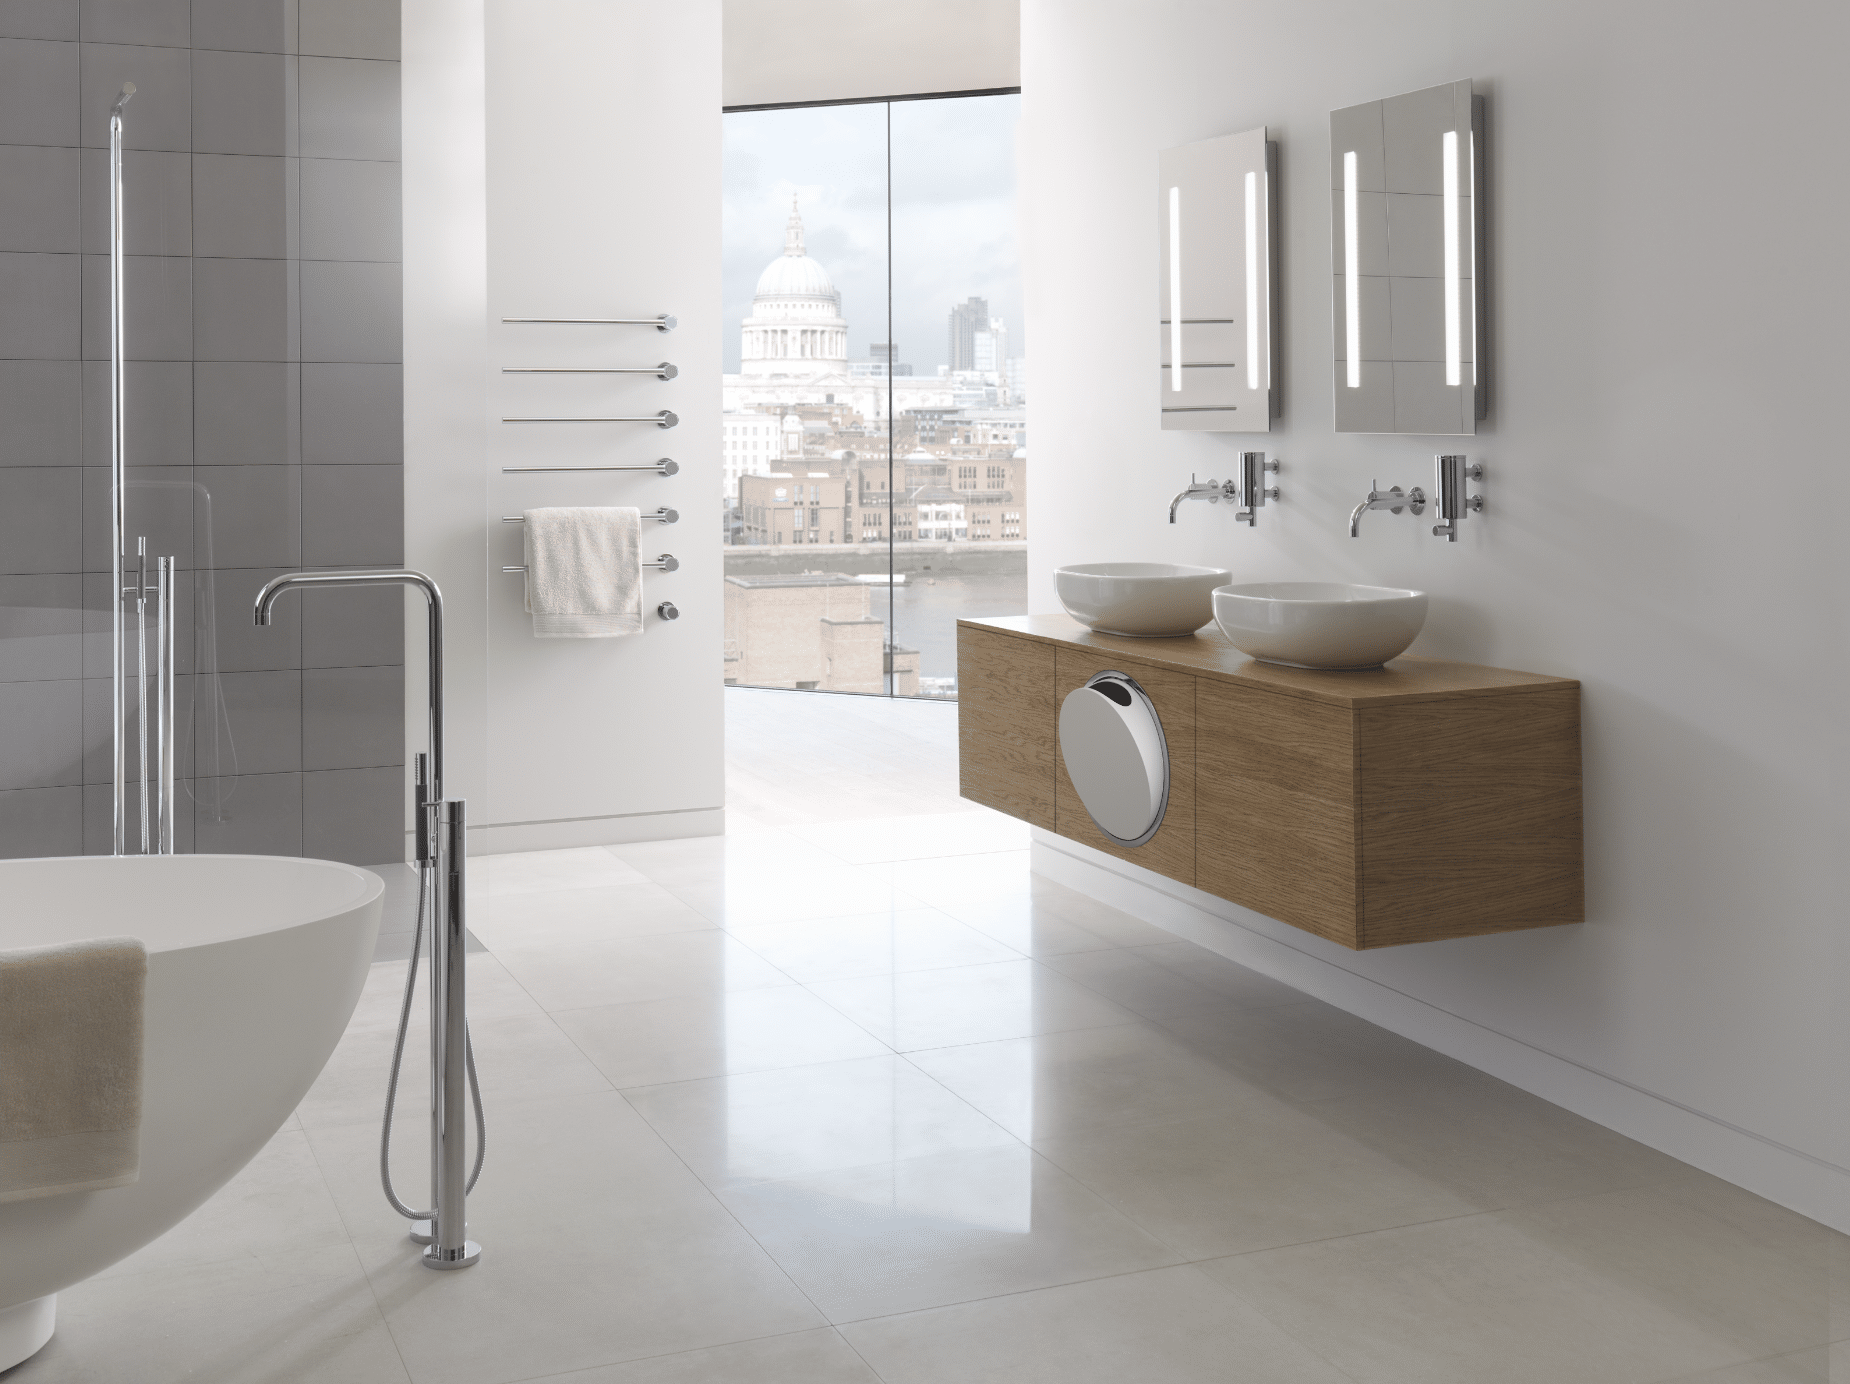 VOLA zeigt ein lichtdurchflutetes Badezimmer mit hellem Fliesenboden, einem Doppelwaschtisch aus Holz und einer freistehenden Badewanne neben einer ebenerdigen Duschkabine mit Glastüren.